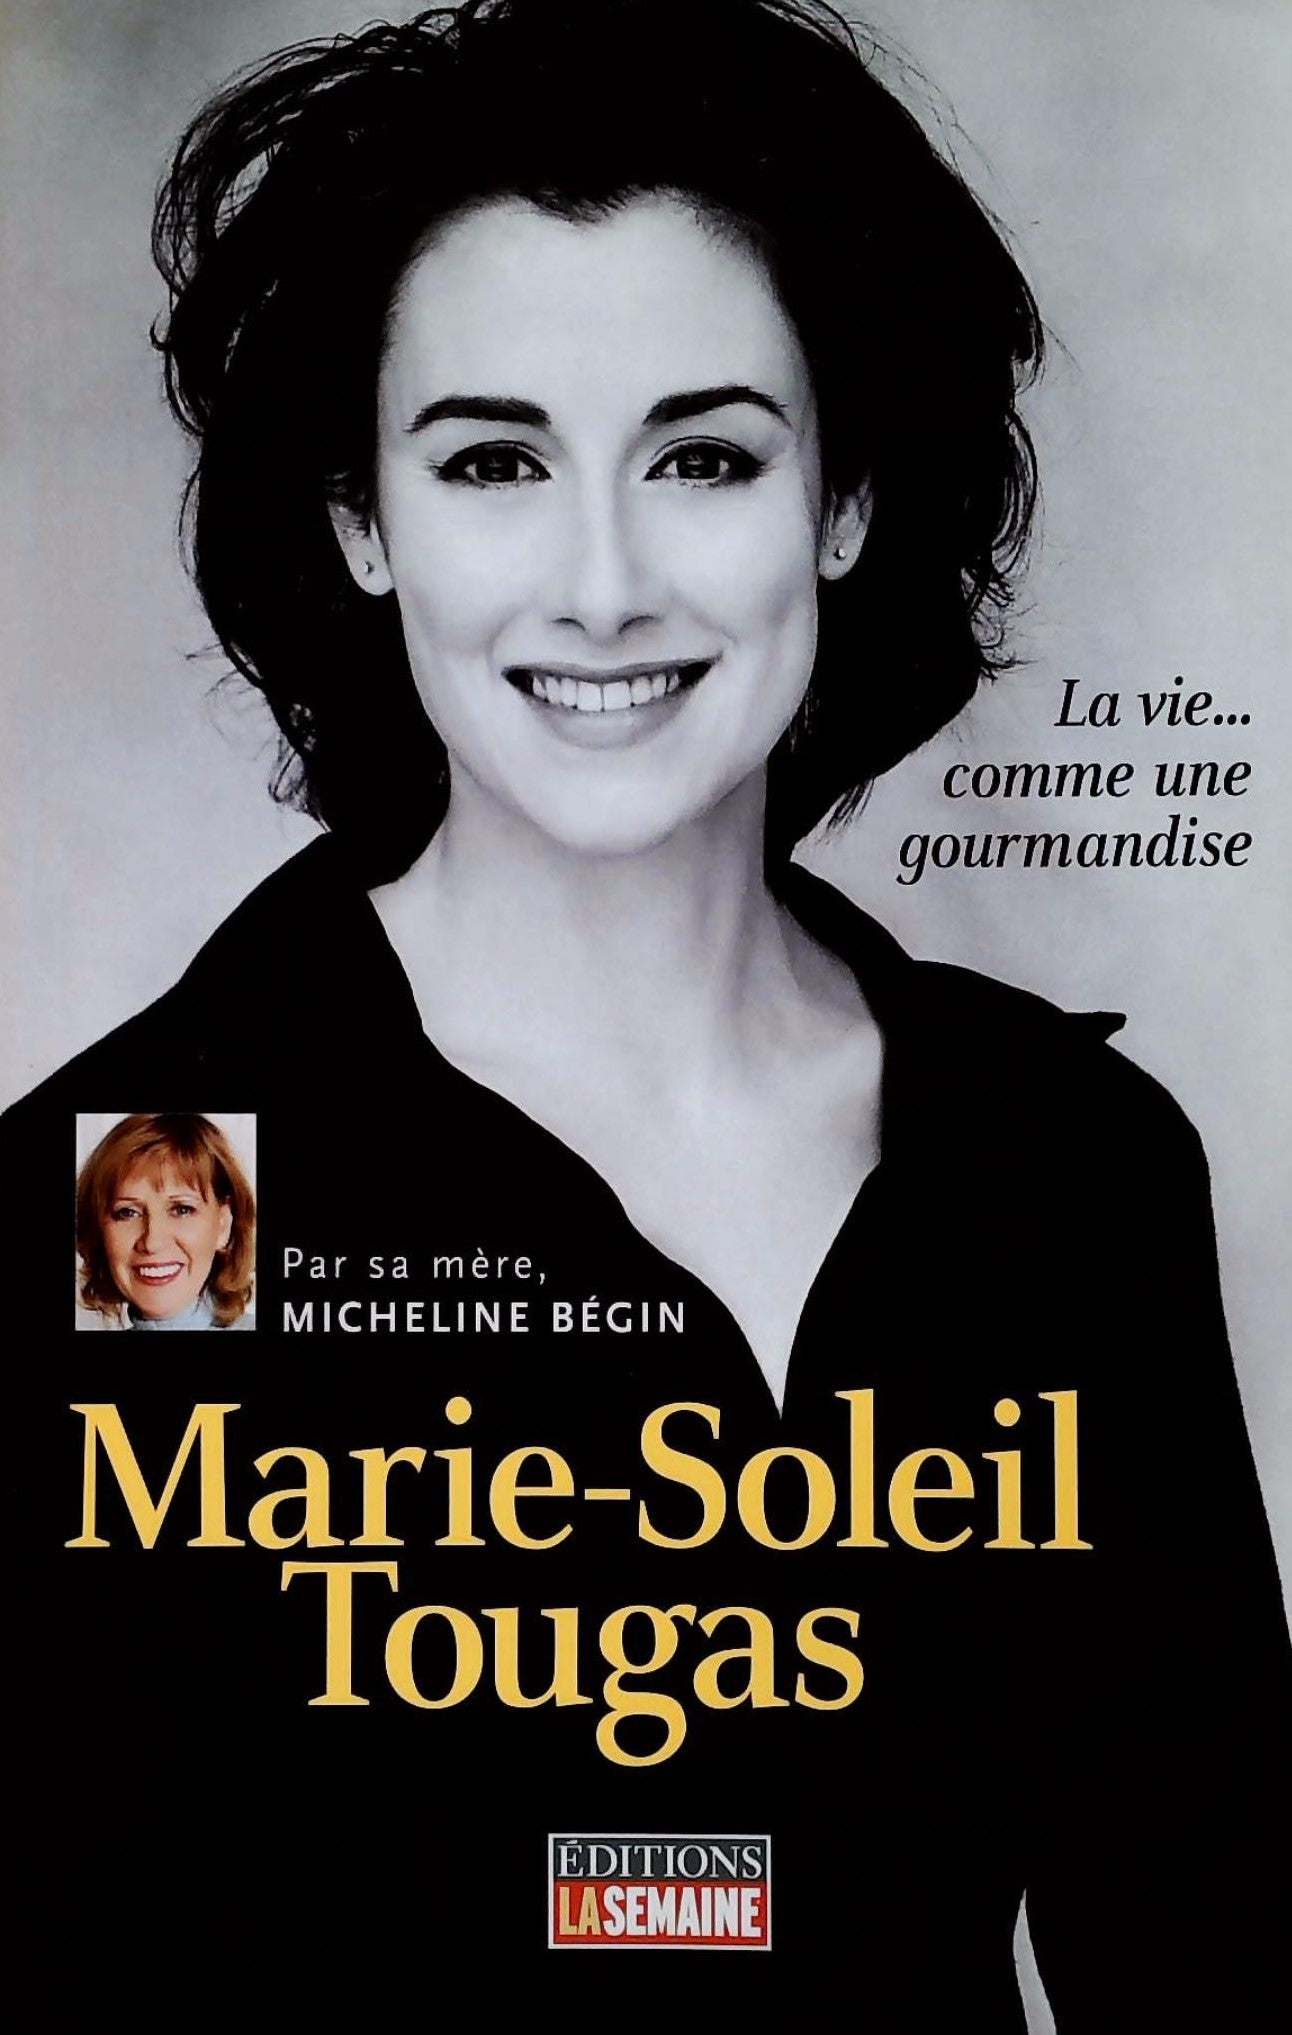 Livre ISBN 2923501209 Marie-Soleil Tougas : La vie comme une gourmandise (Micheline Bégin)